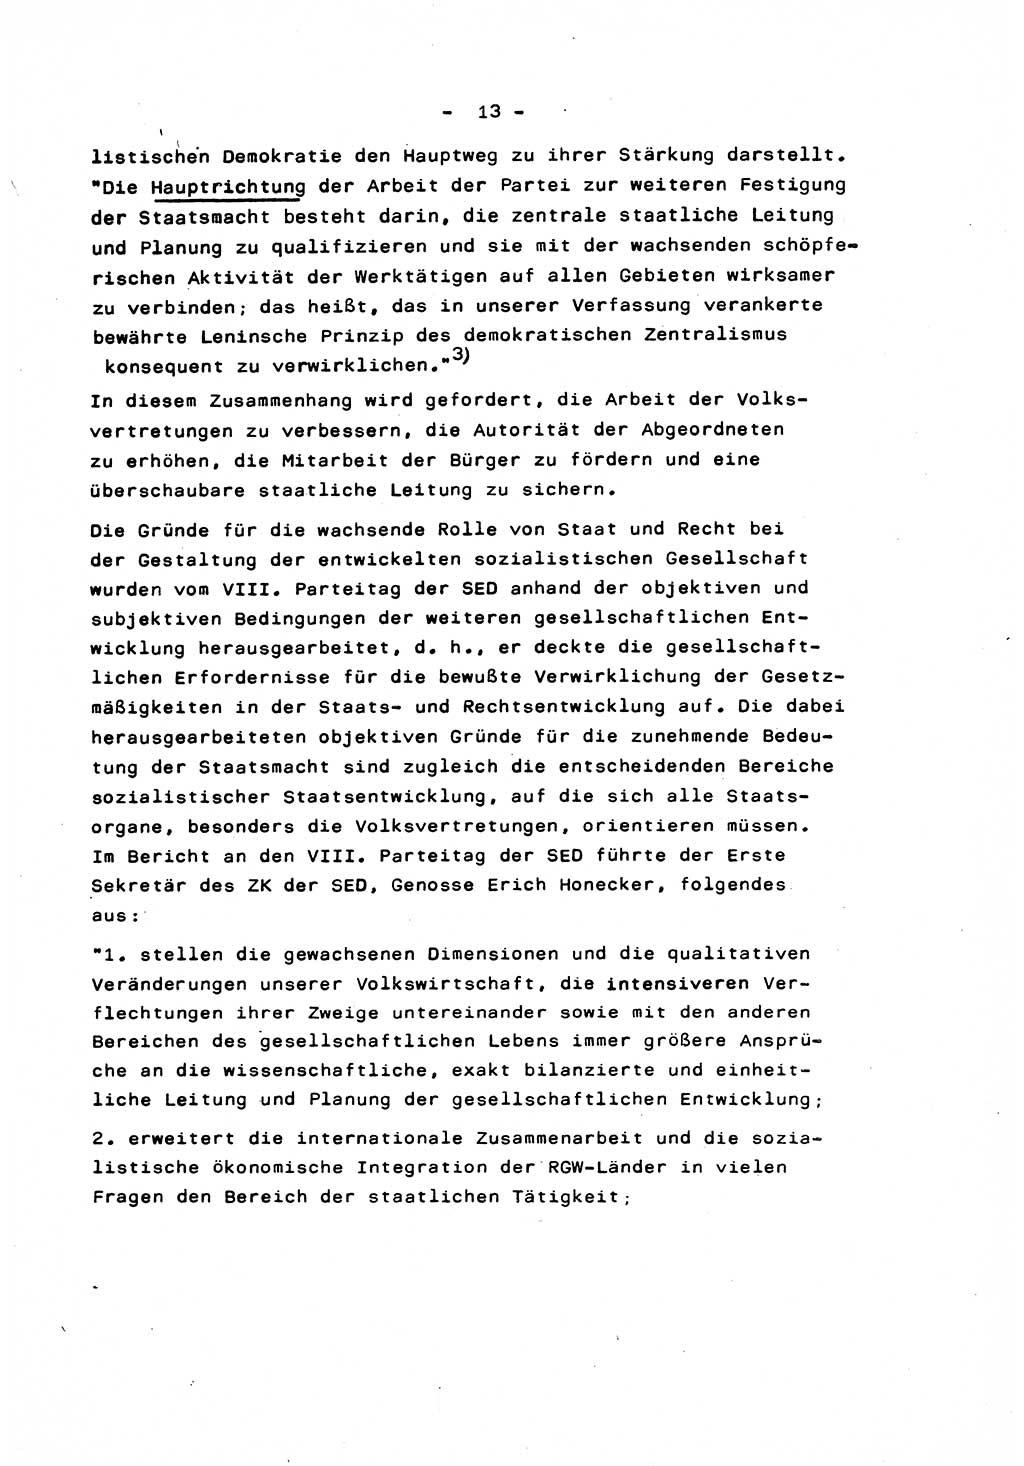 Marxistisch-leninistische Staats- und Rechtstheorie [Deutsche Demokratische Republik (DDR)] 1975, Seite 13 (ML St.-R.-Th. DDR 1975, S. 13)